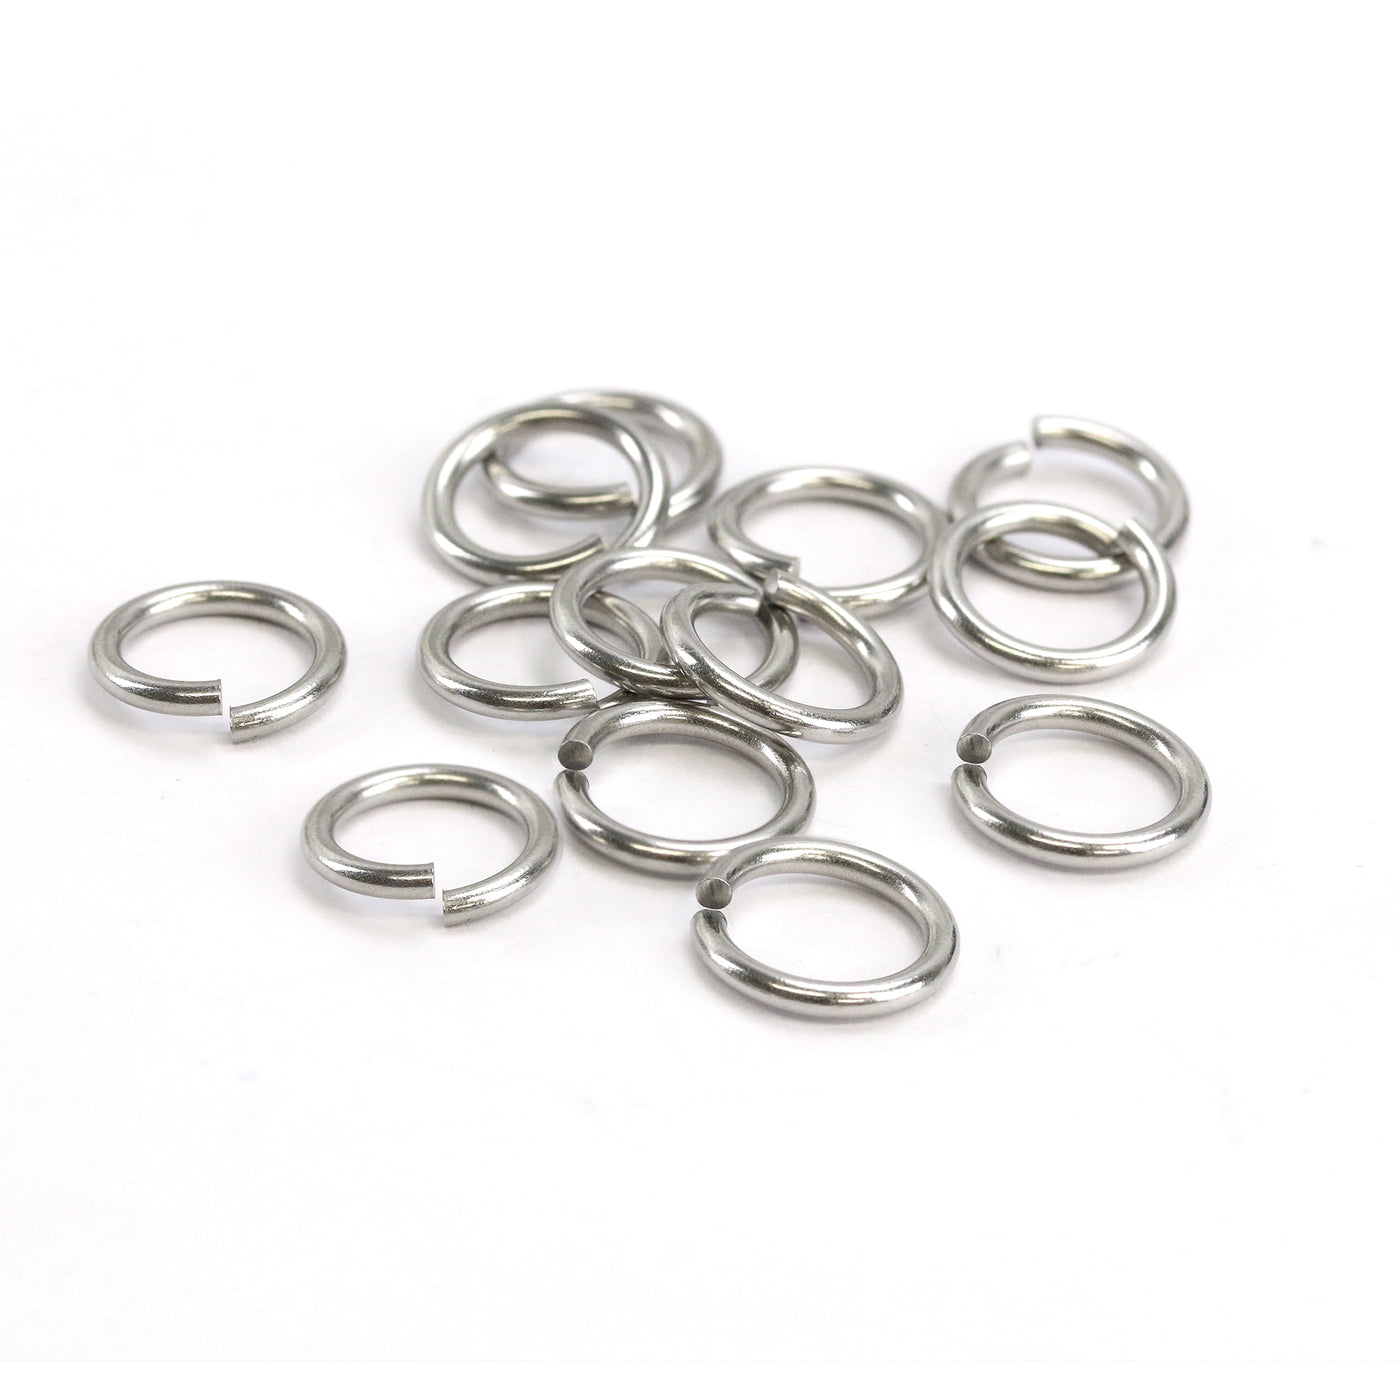 Stainless Steel 5mm I.D. 16 Gauge Jump Rings, 1/4 oz (~35 rings